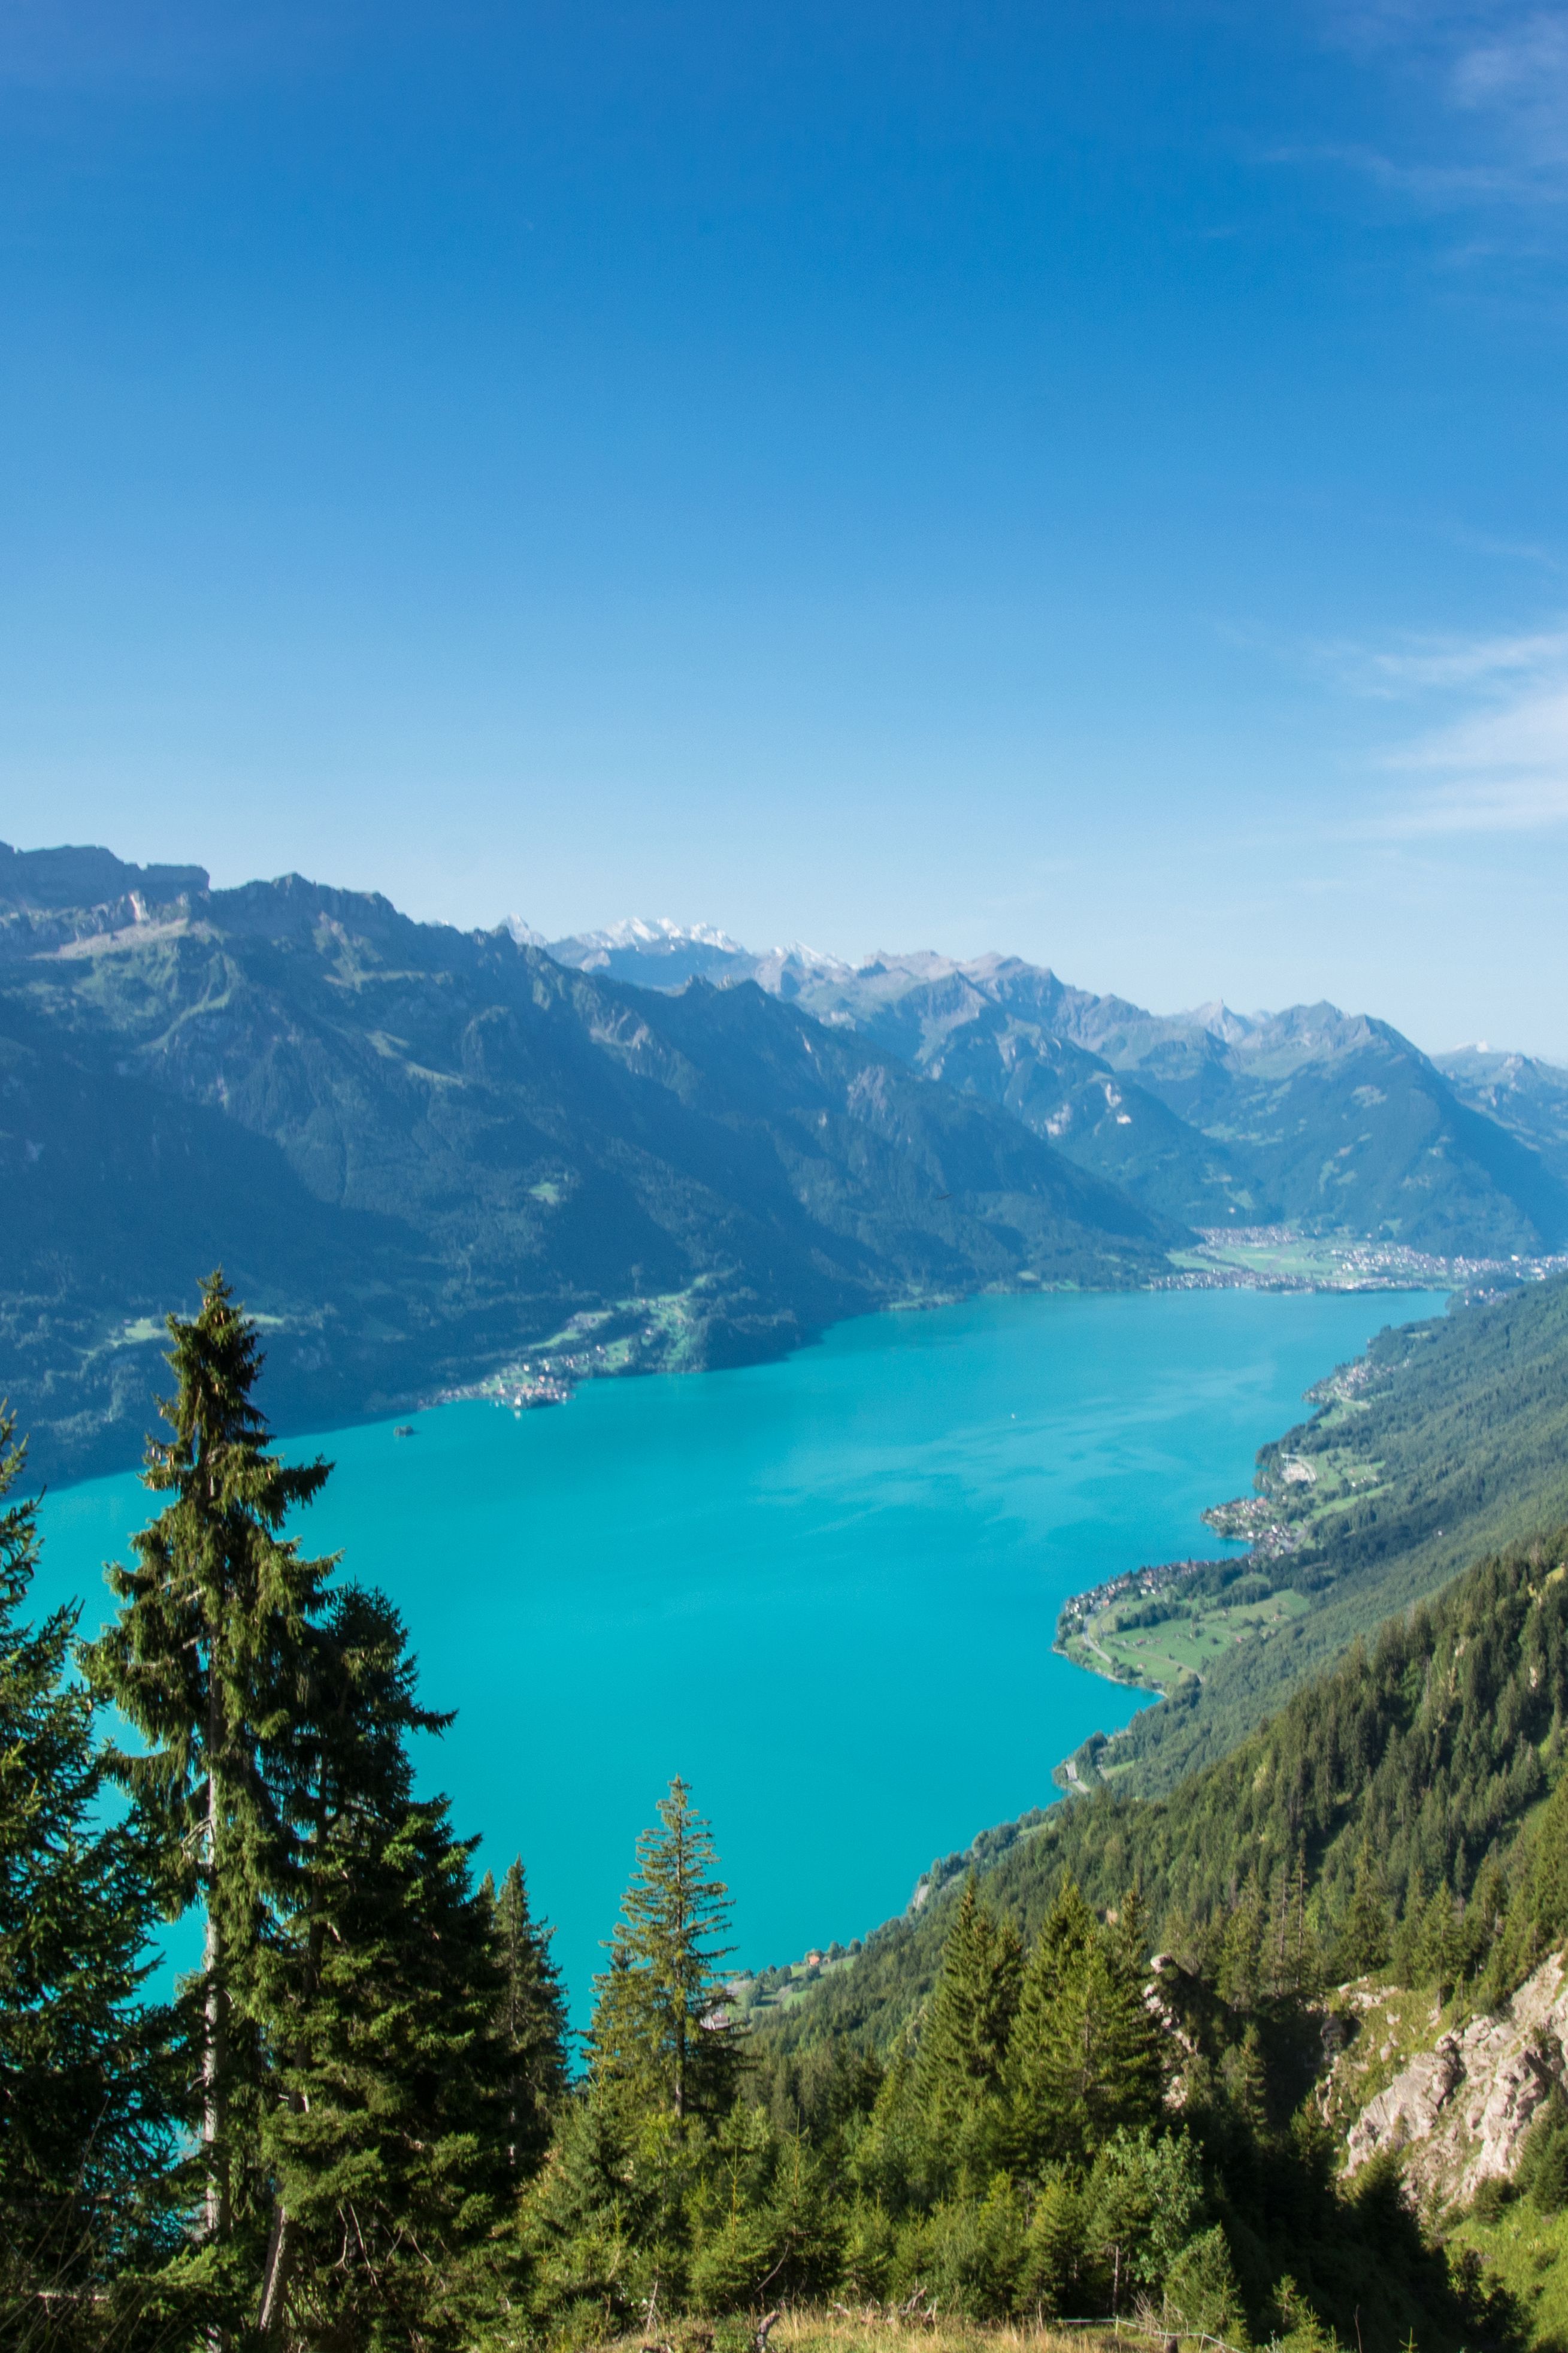  Schweiz Hintergrundbild 2618x3928. Hintergrundbild Brienzersee. Hintergrundbilder, Urlaub, Reisen